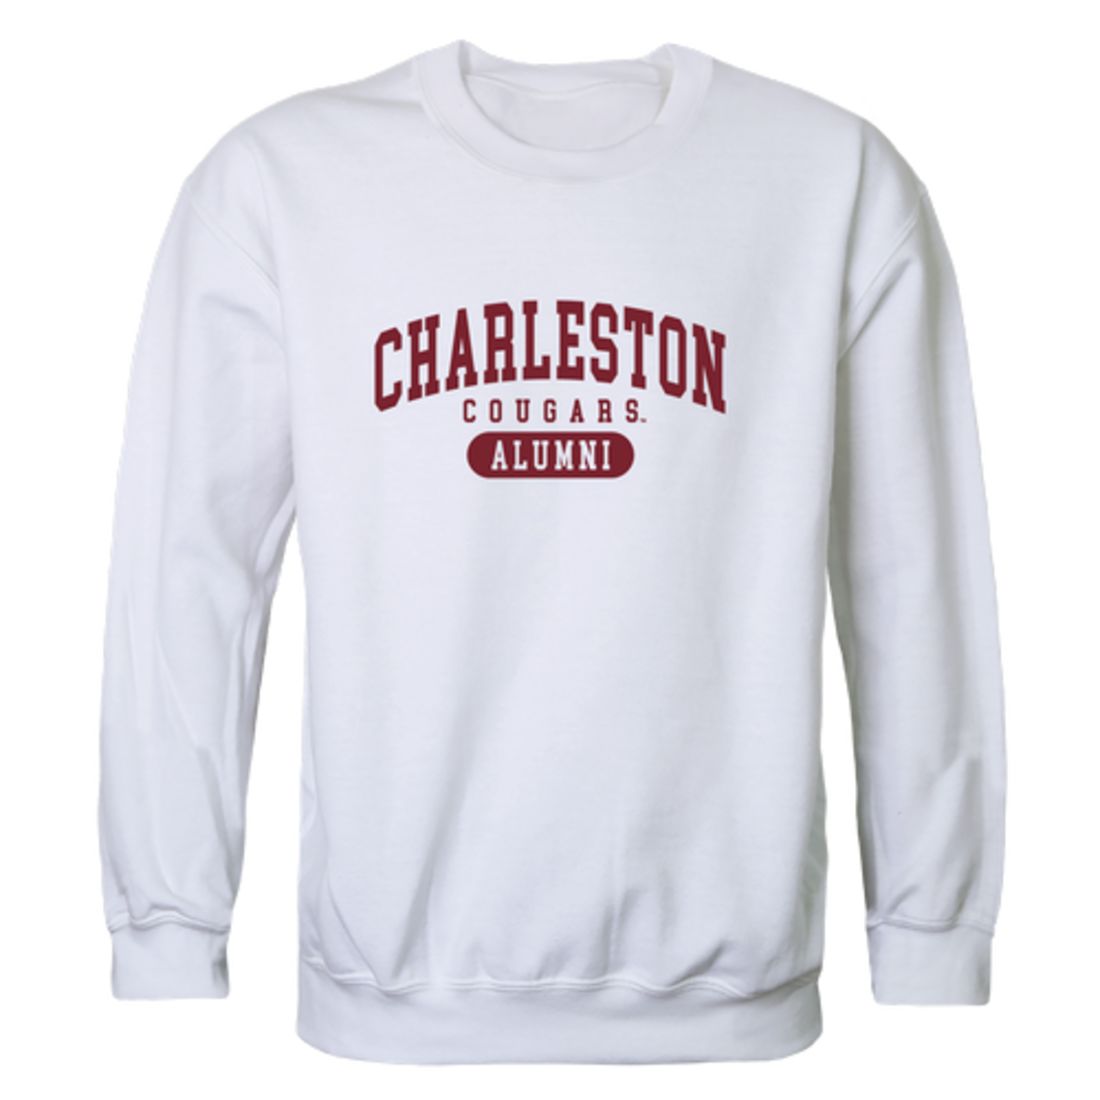 COFC College of Charleston Cougars Alumni Fleece Crewneck Pullover Sweatshirt Heather Gray-Campus-Wardrobe